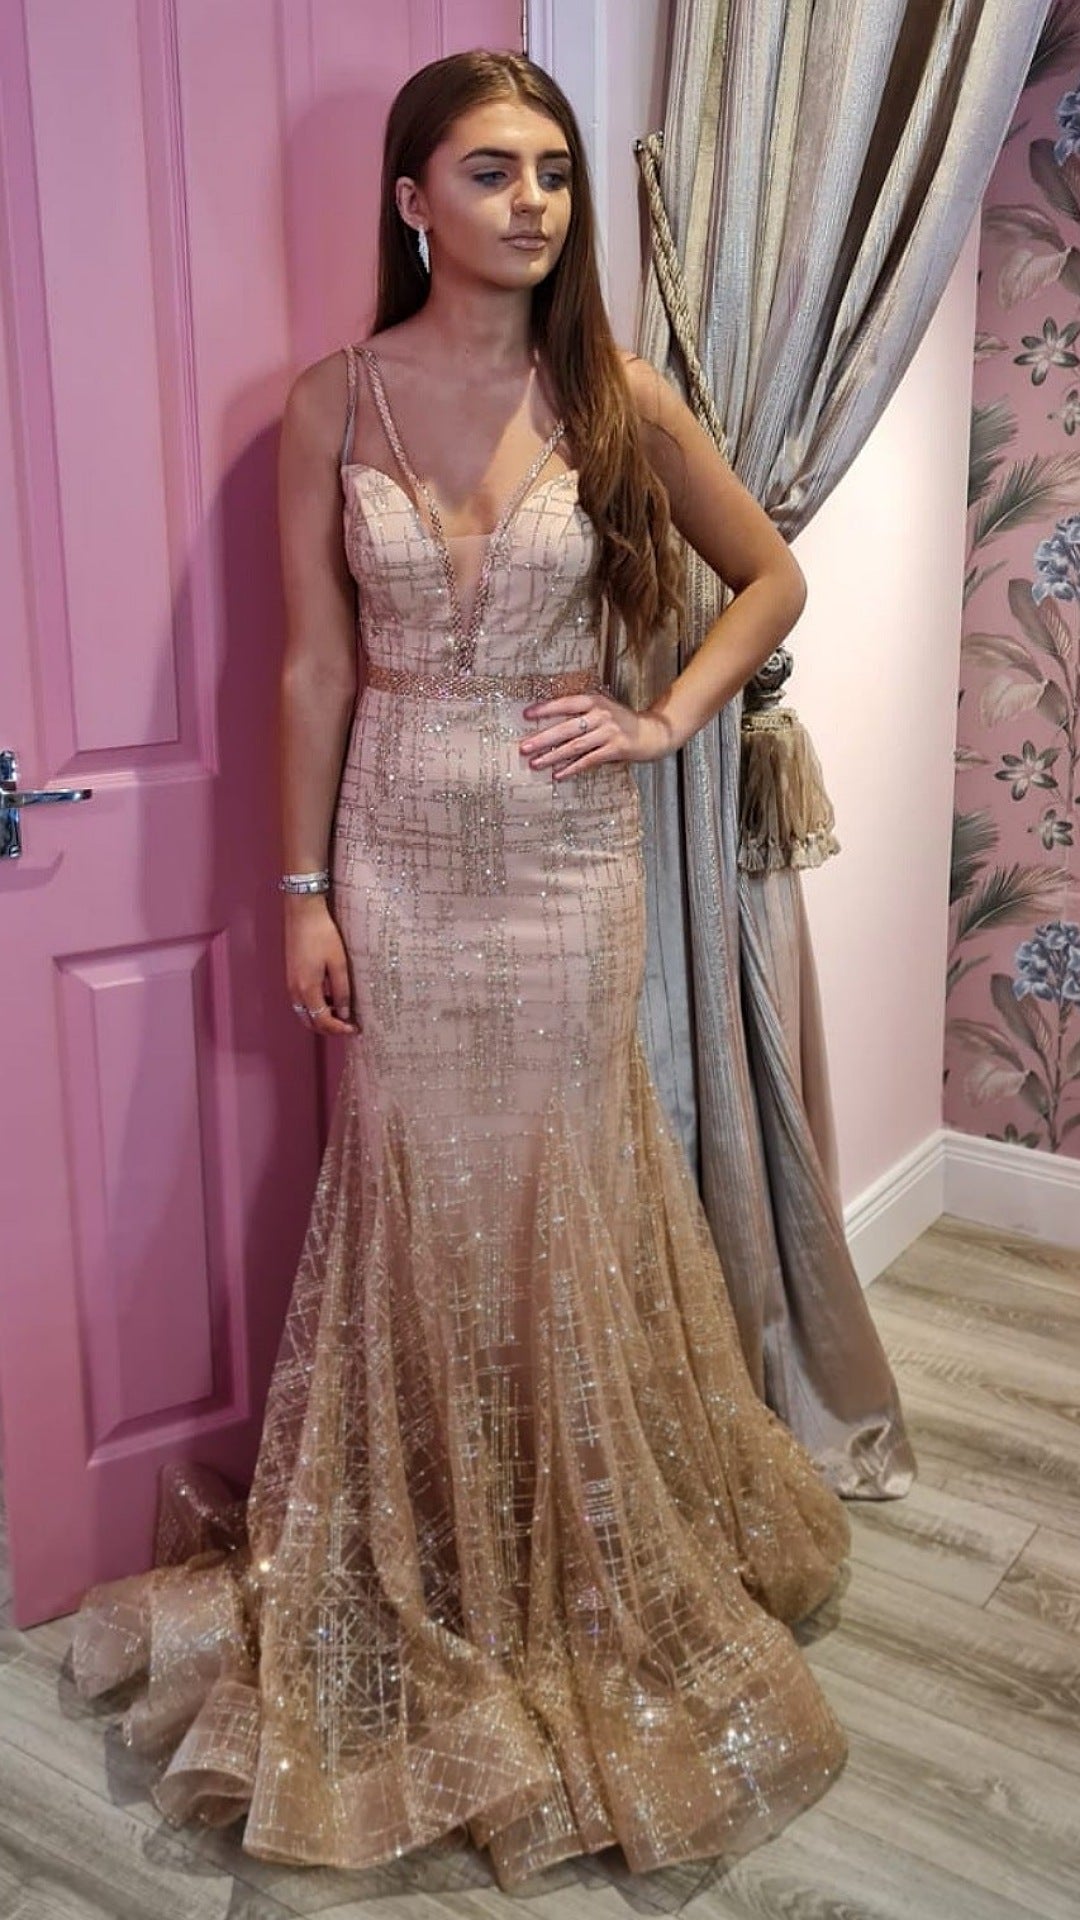 Carmela Rose Gold Glitter Formal Prom Dress